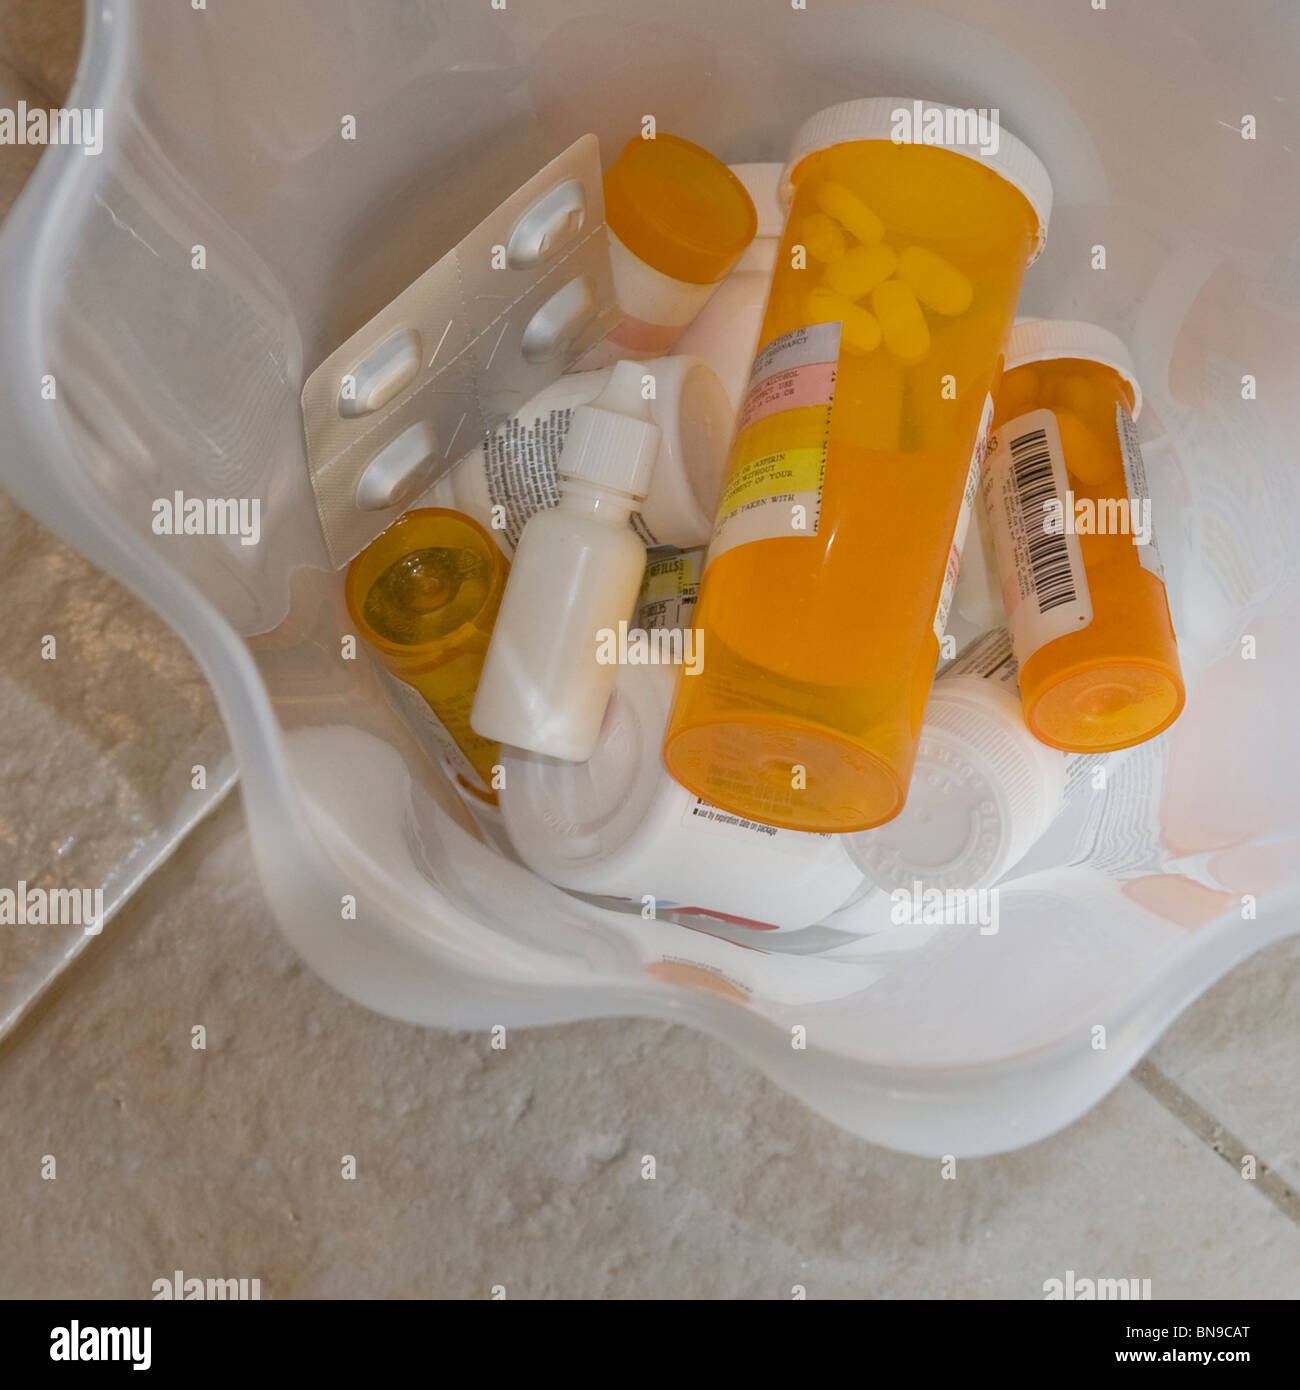 Varios recipientes de medicamentos de prescripción en la basura Foto de stock